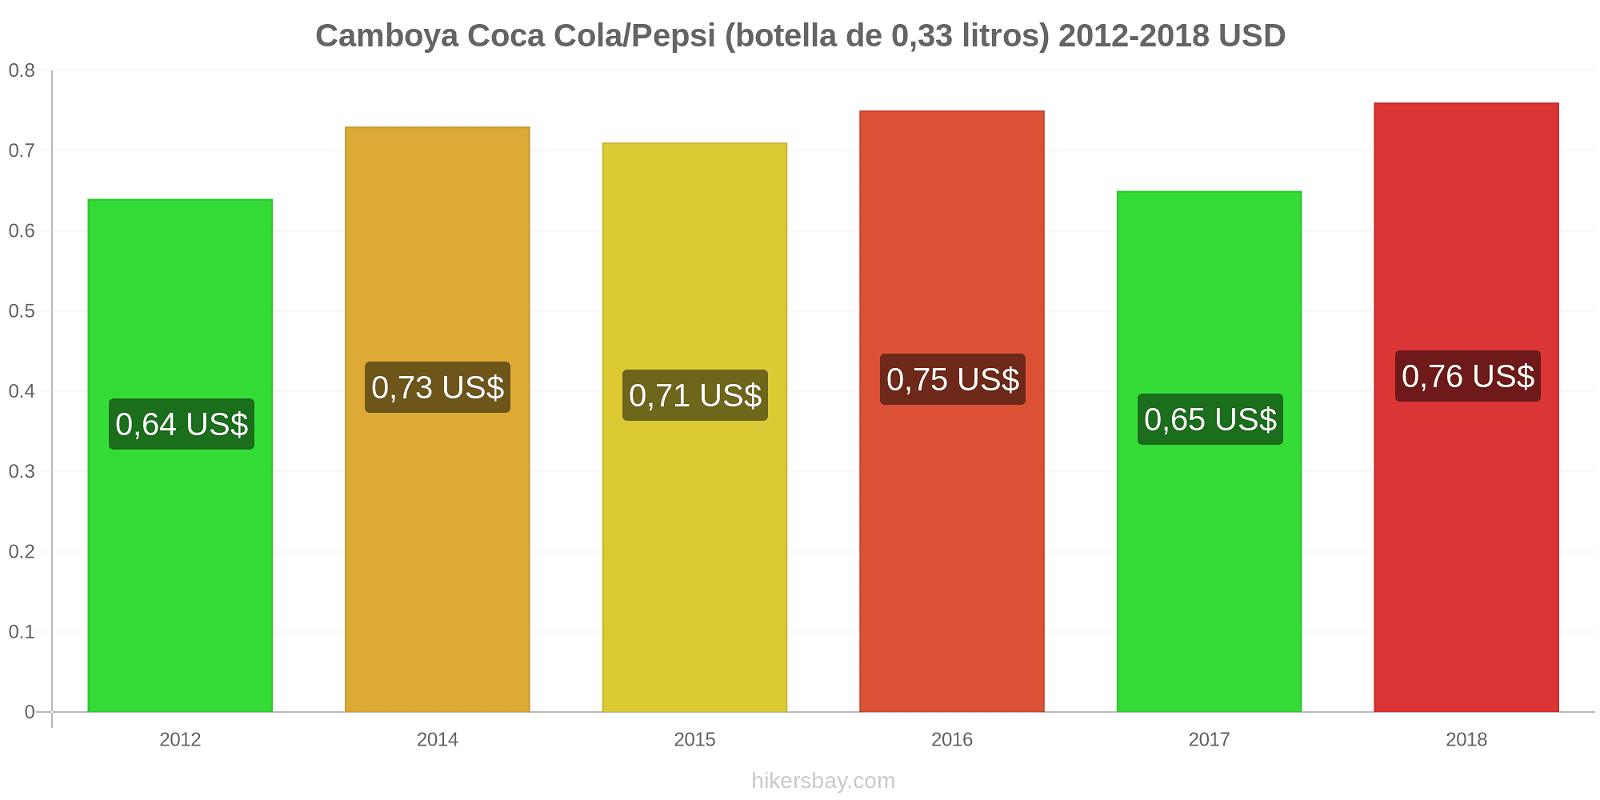 Camboya cambios de precios Coca-Cola/Pepsi (botella de 0.33 litros) hikersbay.com